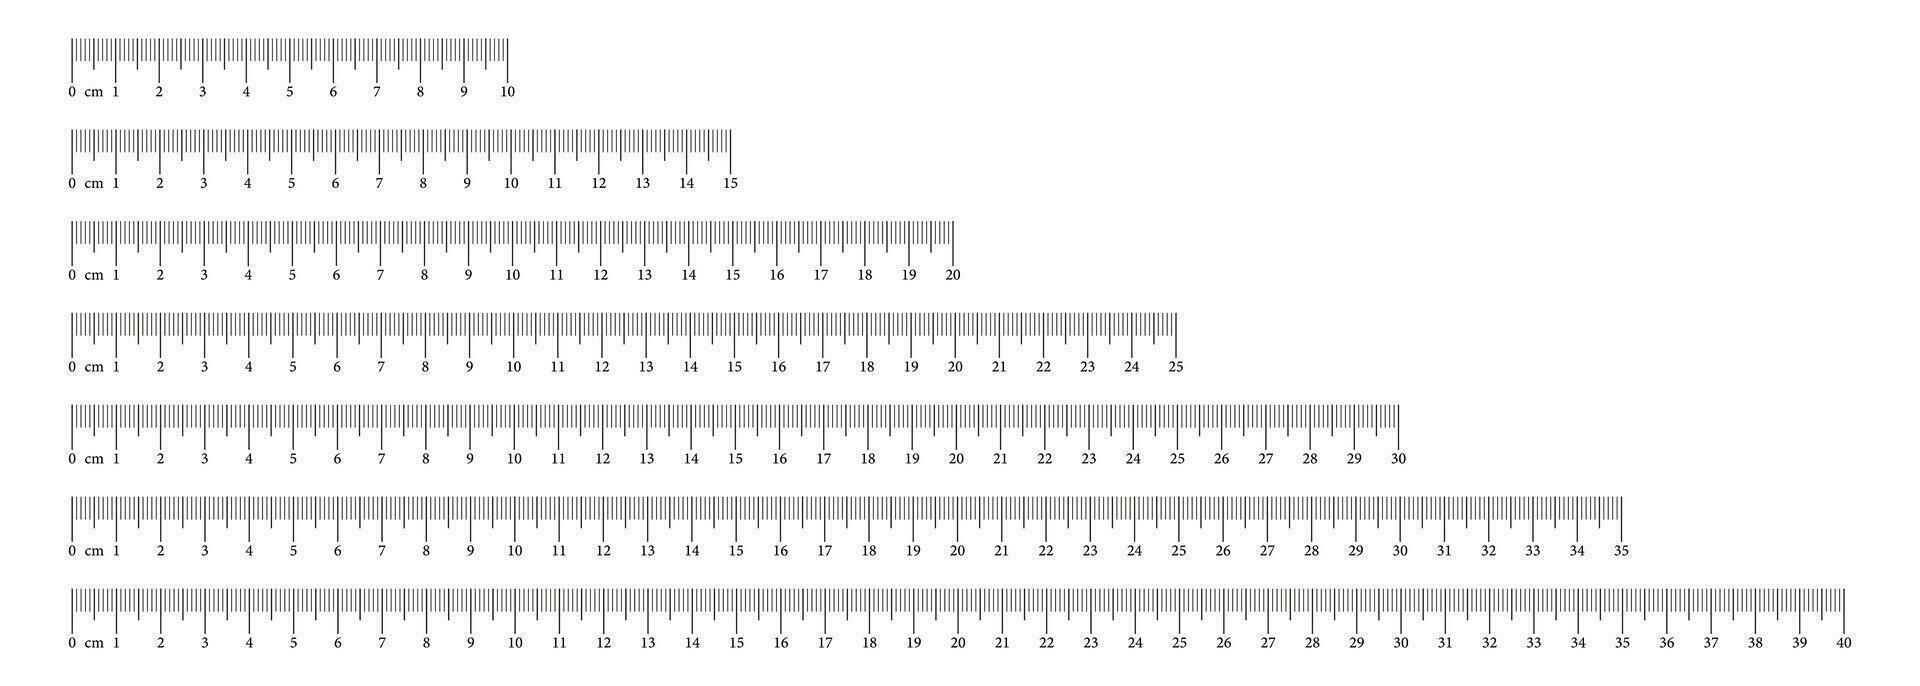 verzameling meten grafieken met 10,15, 20, 25, 30, 35, 40 centimeter. lengte meting wiskunde, afstand, hoogte, naaien hulpmiddelen. reeks van Sjablonen heersers schaal met nummers. eps, vector illustratie.